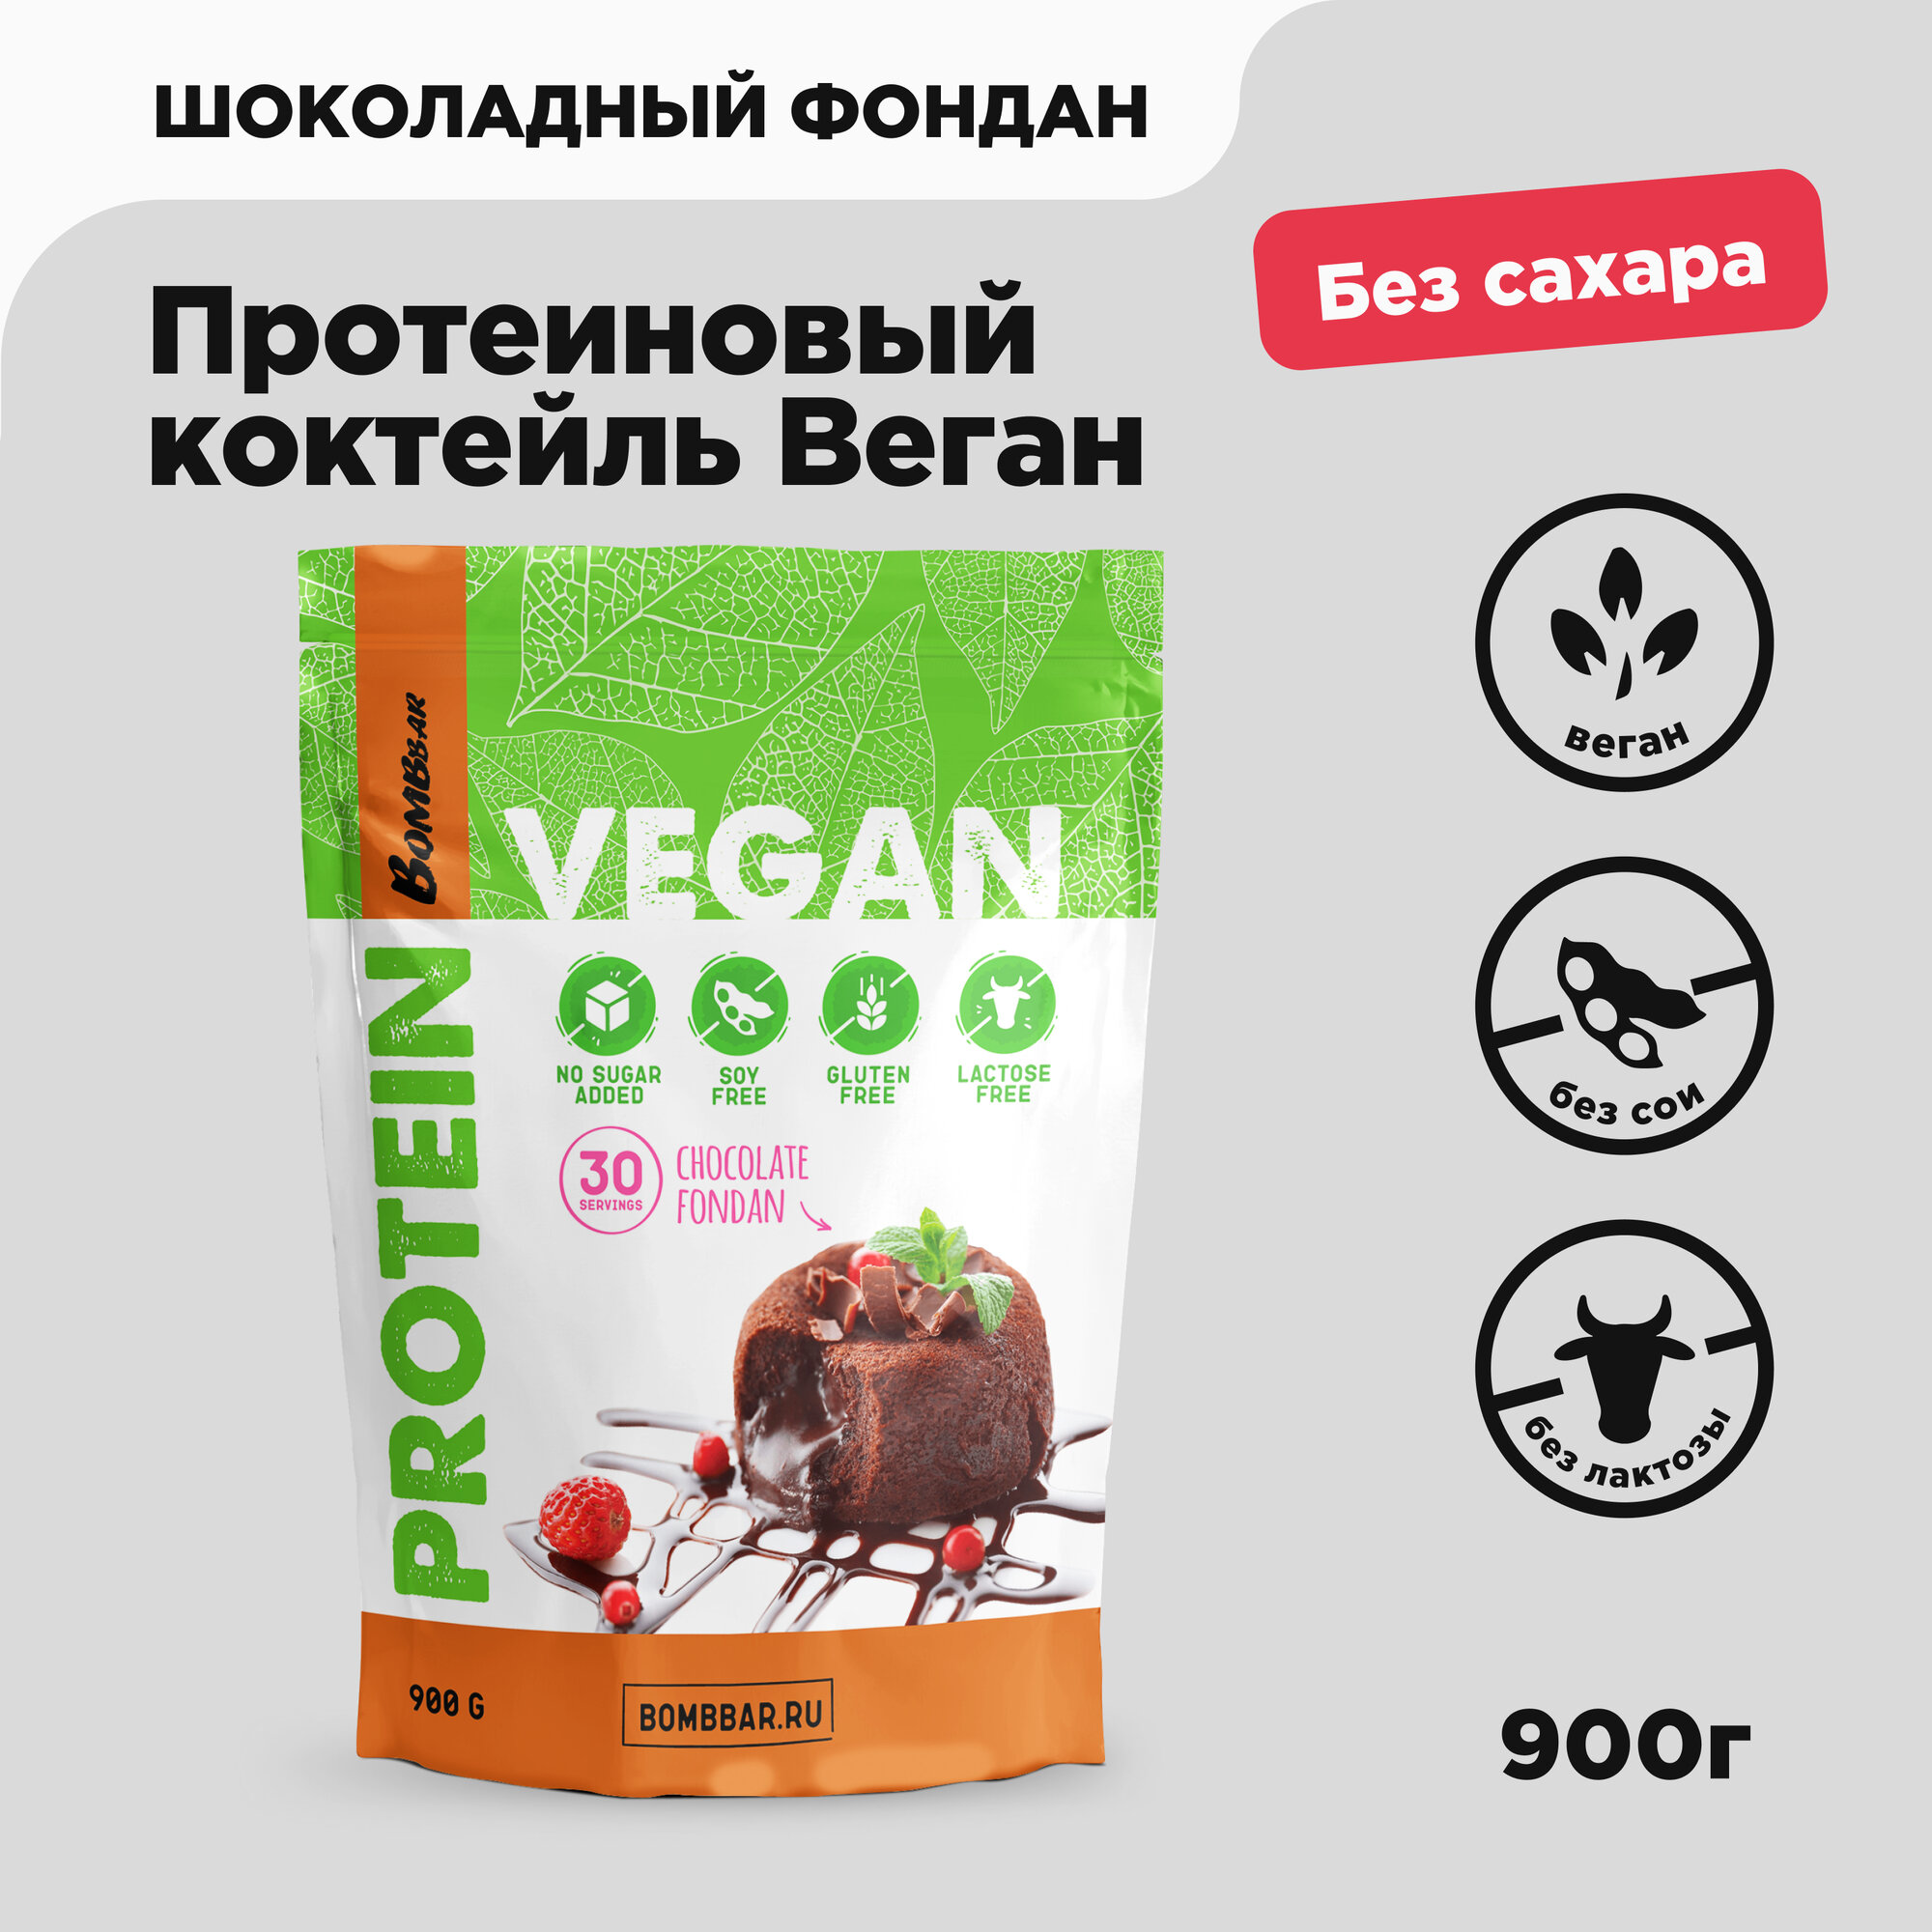 Протеин веганский Bombbar Vegan шоколадный фондан 900 гр.